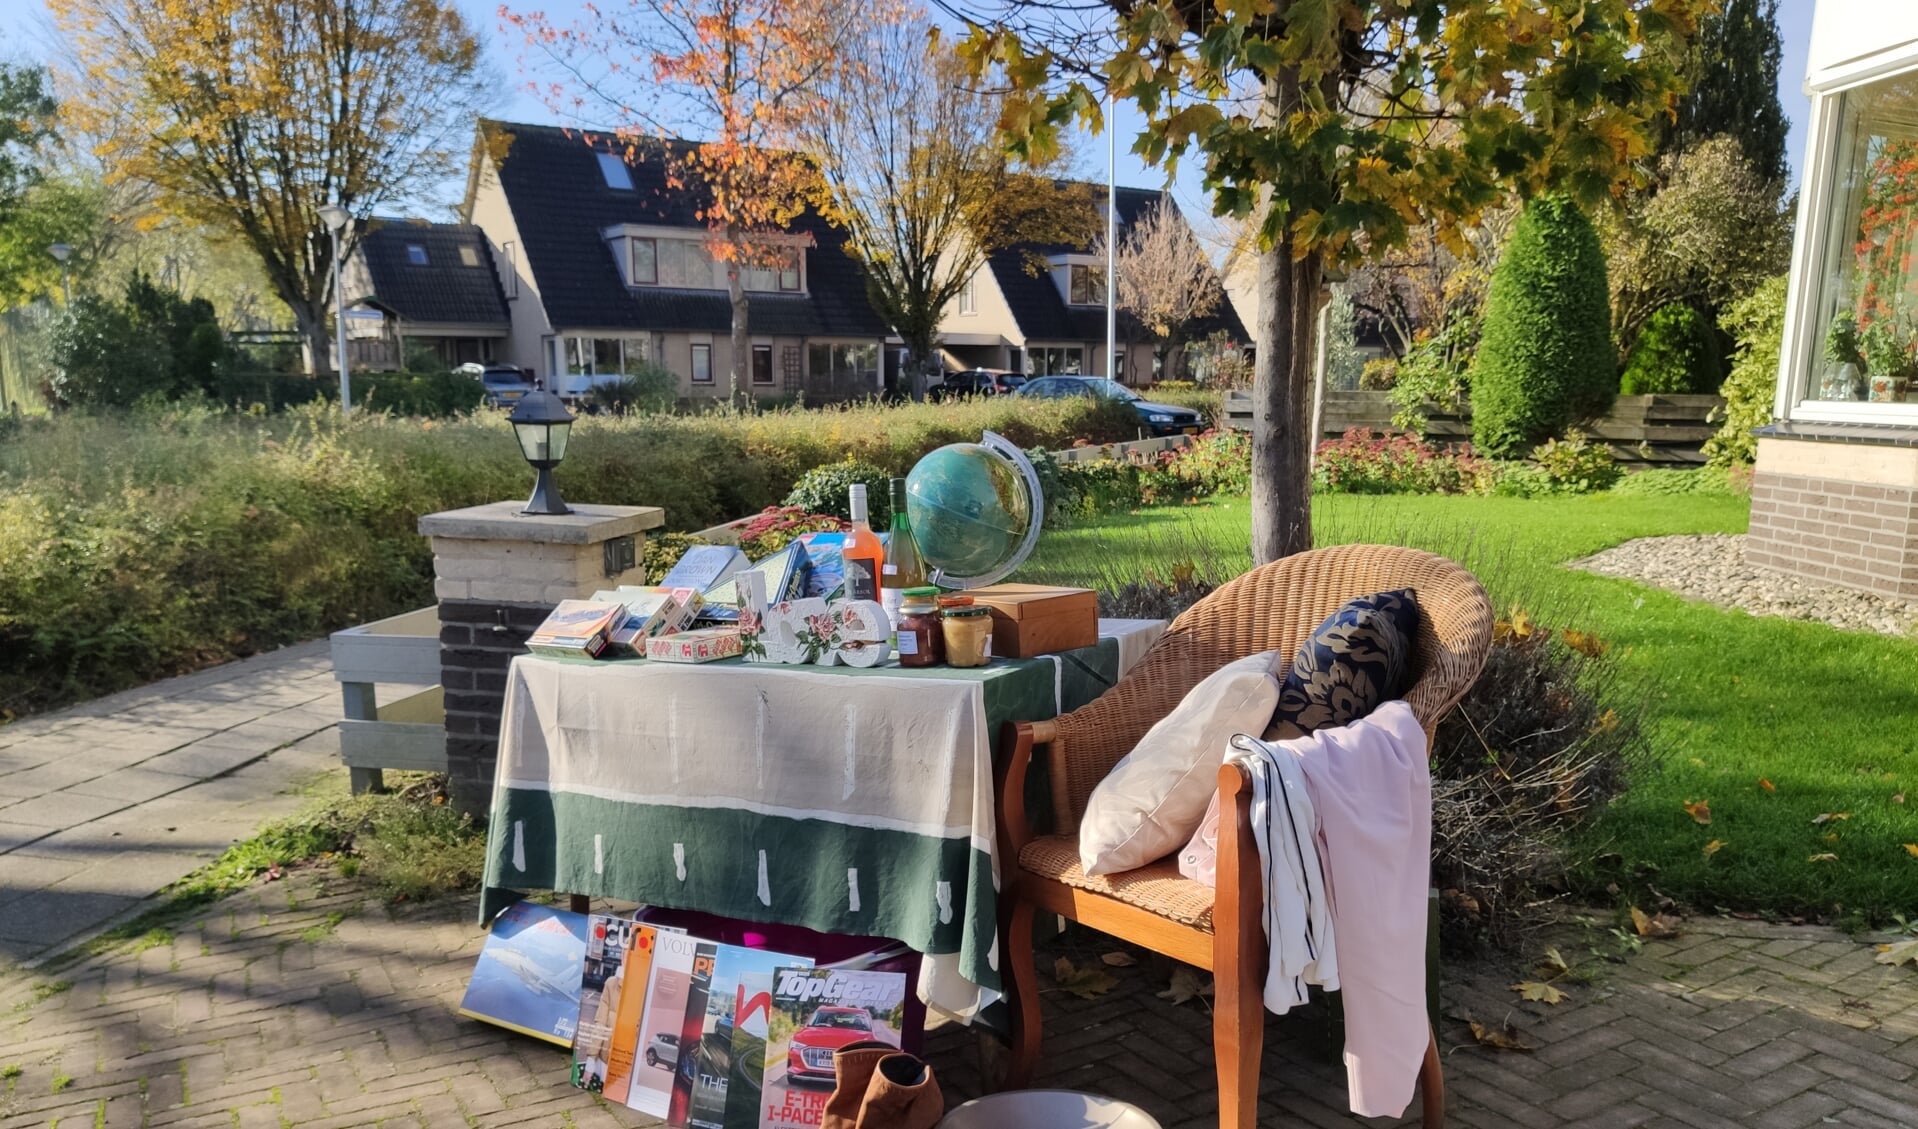 Bij Wandel en Handel kunnen bewoners hun spullen op eigen stoep verkopen of weggeven. Foto: Hans Wonink